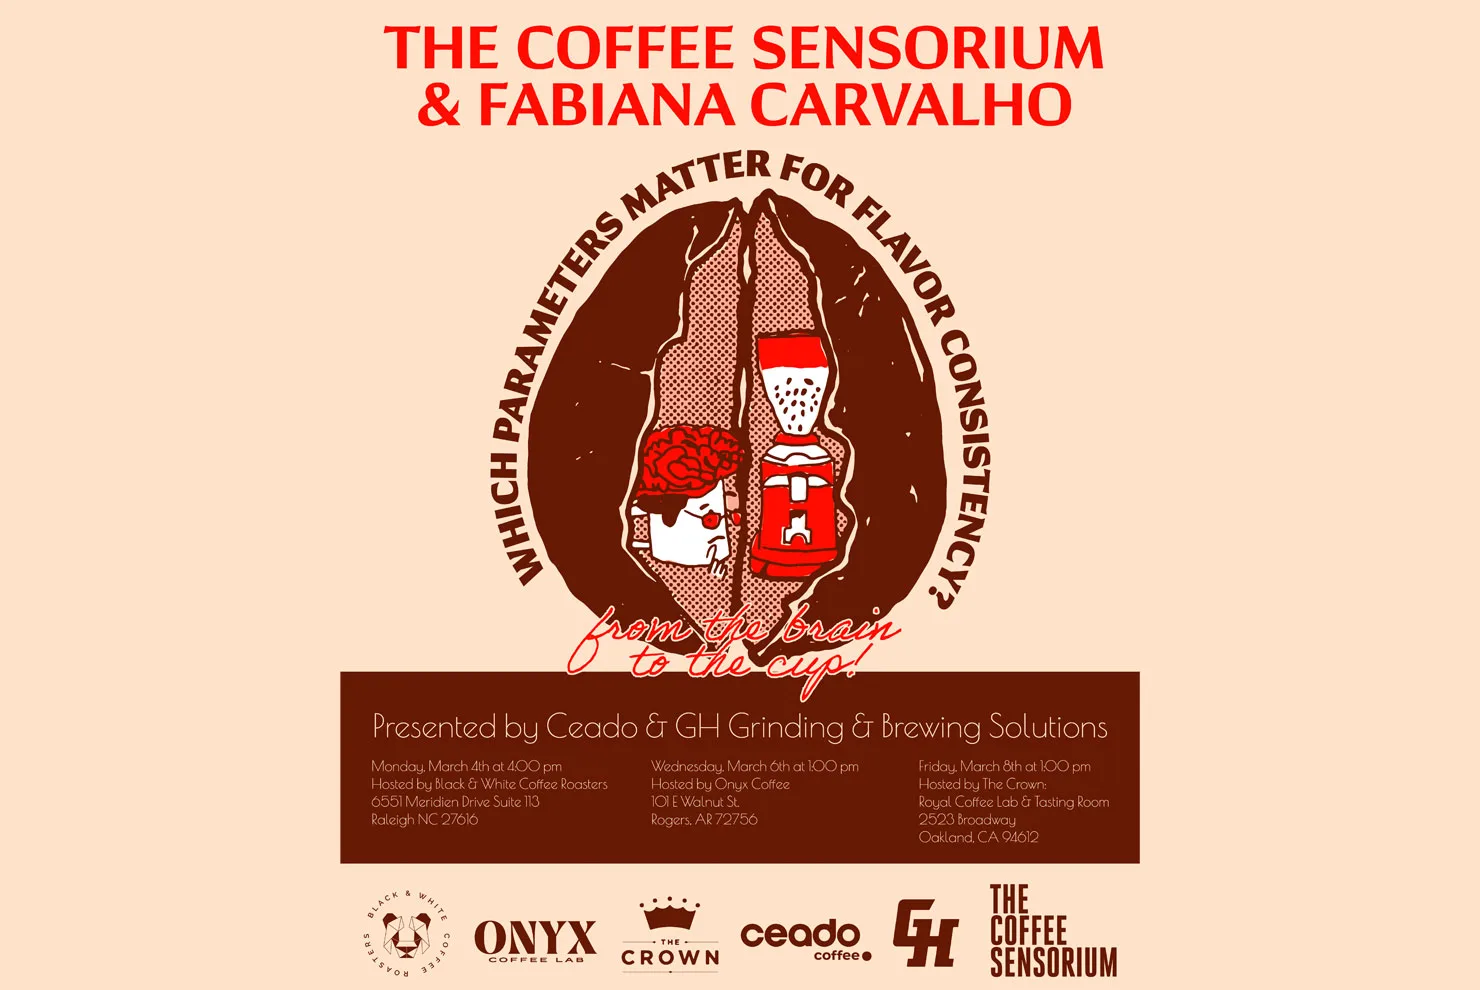 coffee sensorium fabiana carvalho event ceado sprudge